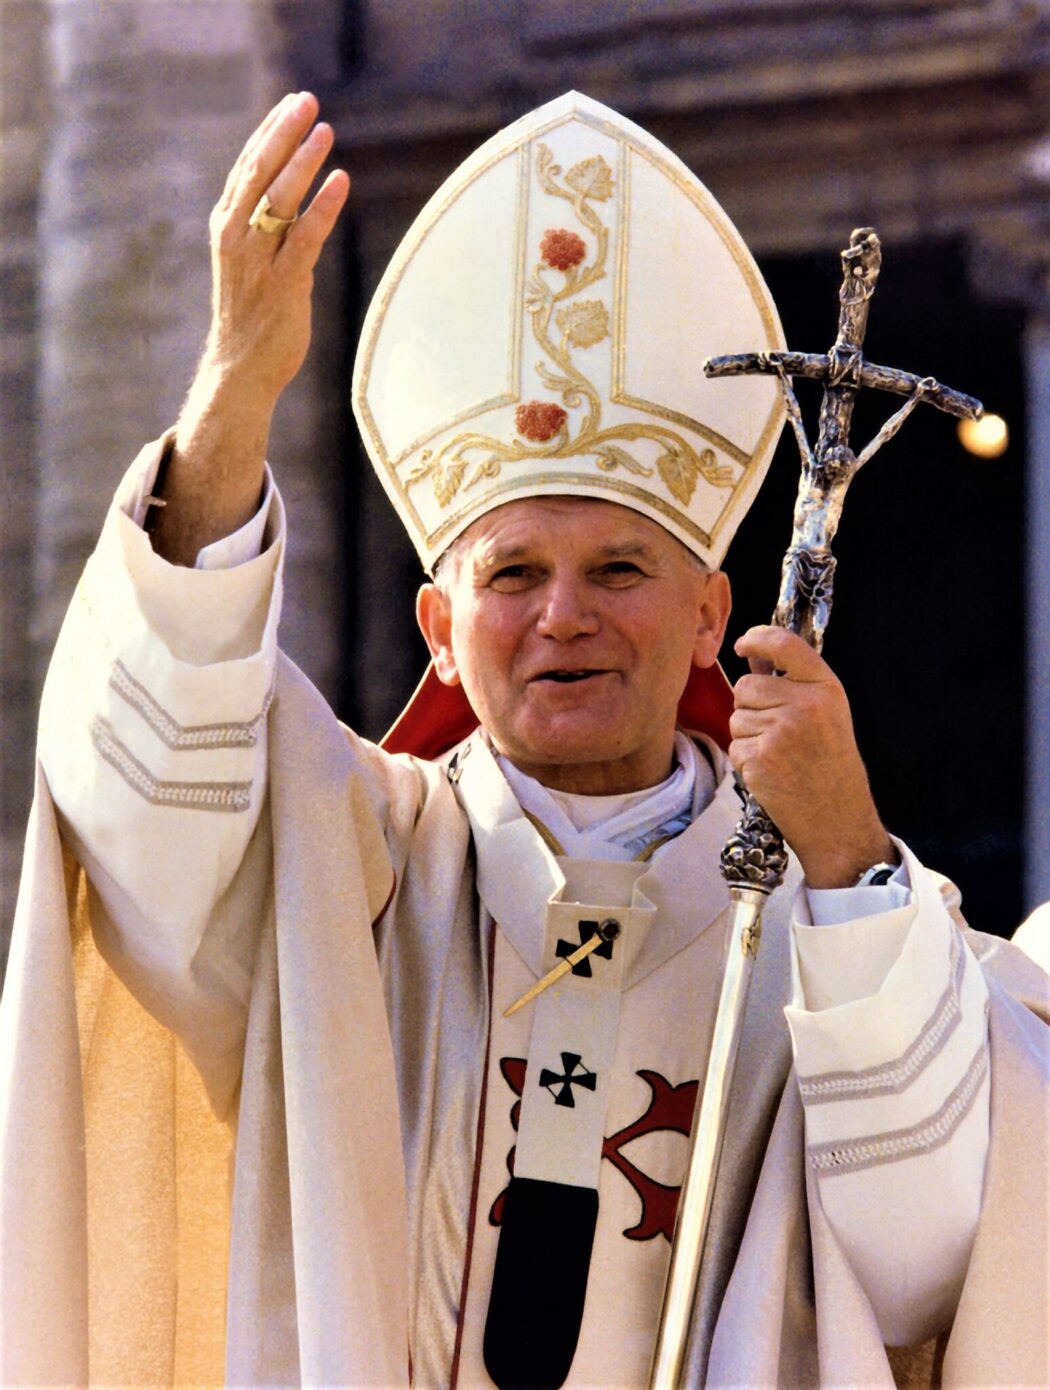 Je ne crois pas aux accusations portées contre Jean-Paul II